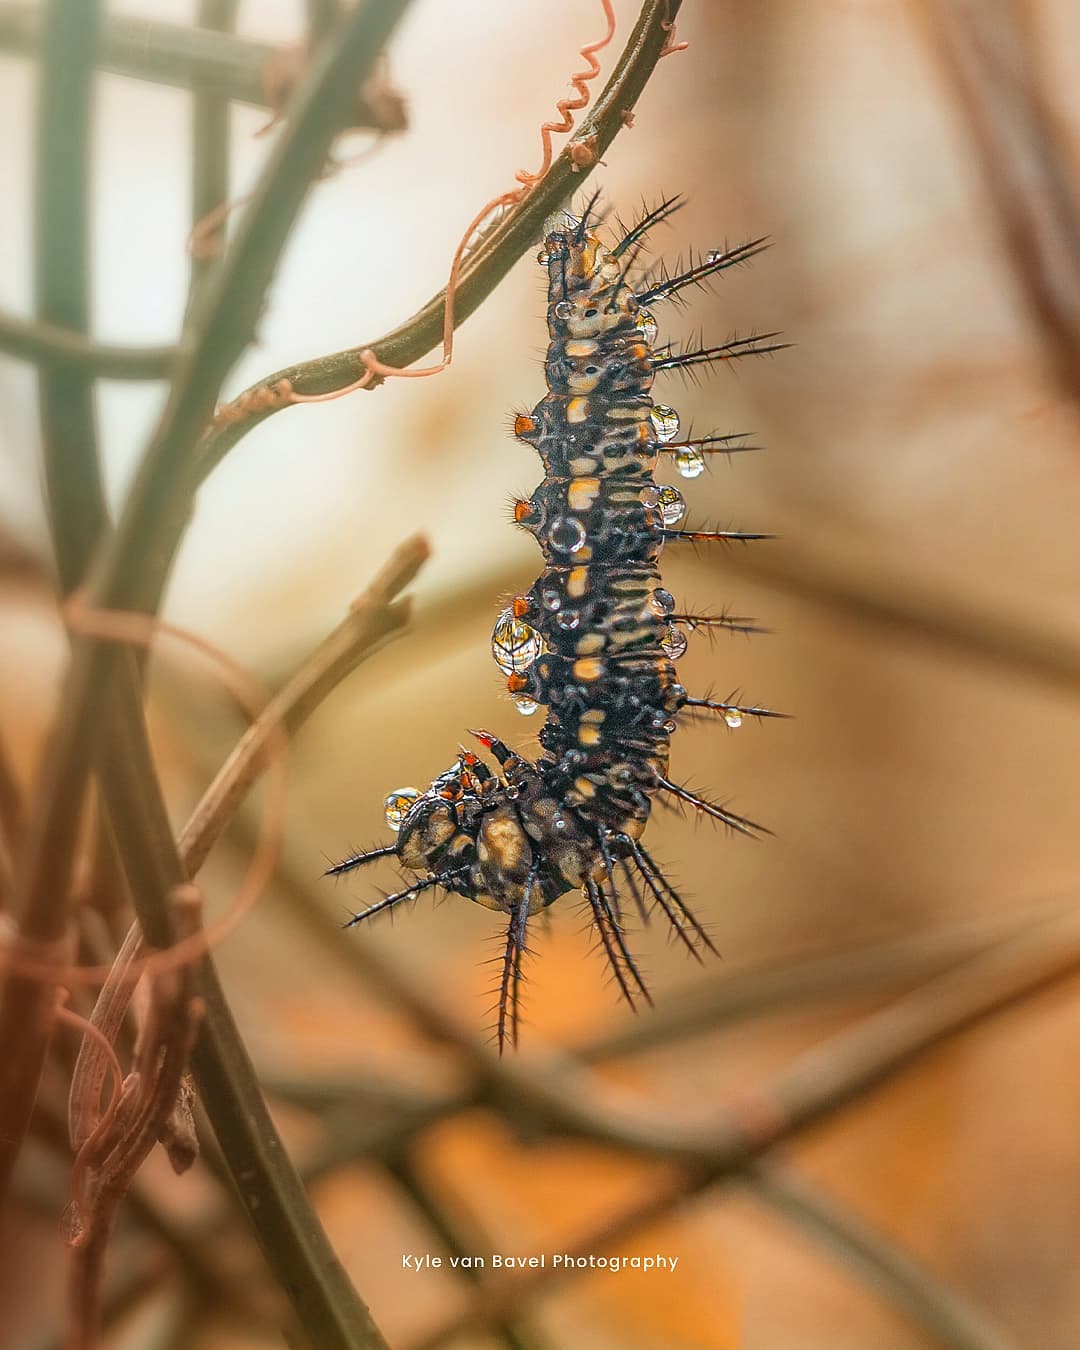 Грибы, цветы и насекомые на макроснимках Кайла ван Бавела Природа